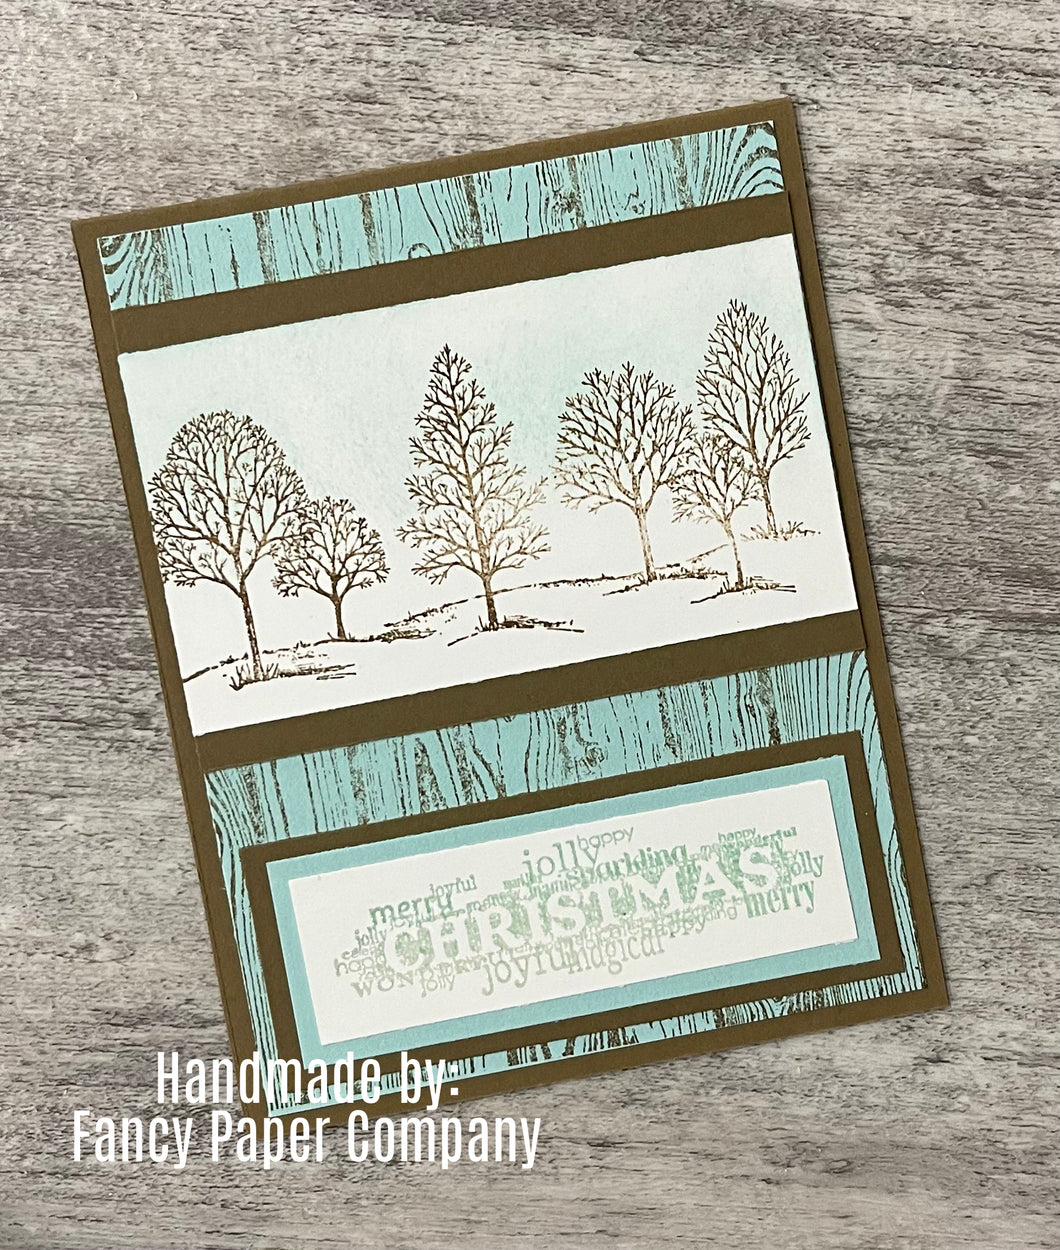 Handmade Card - Brown and Teal Christmas Card